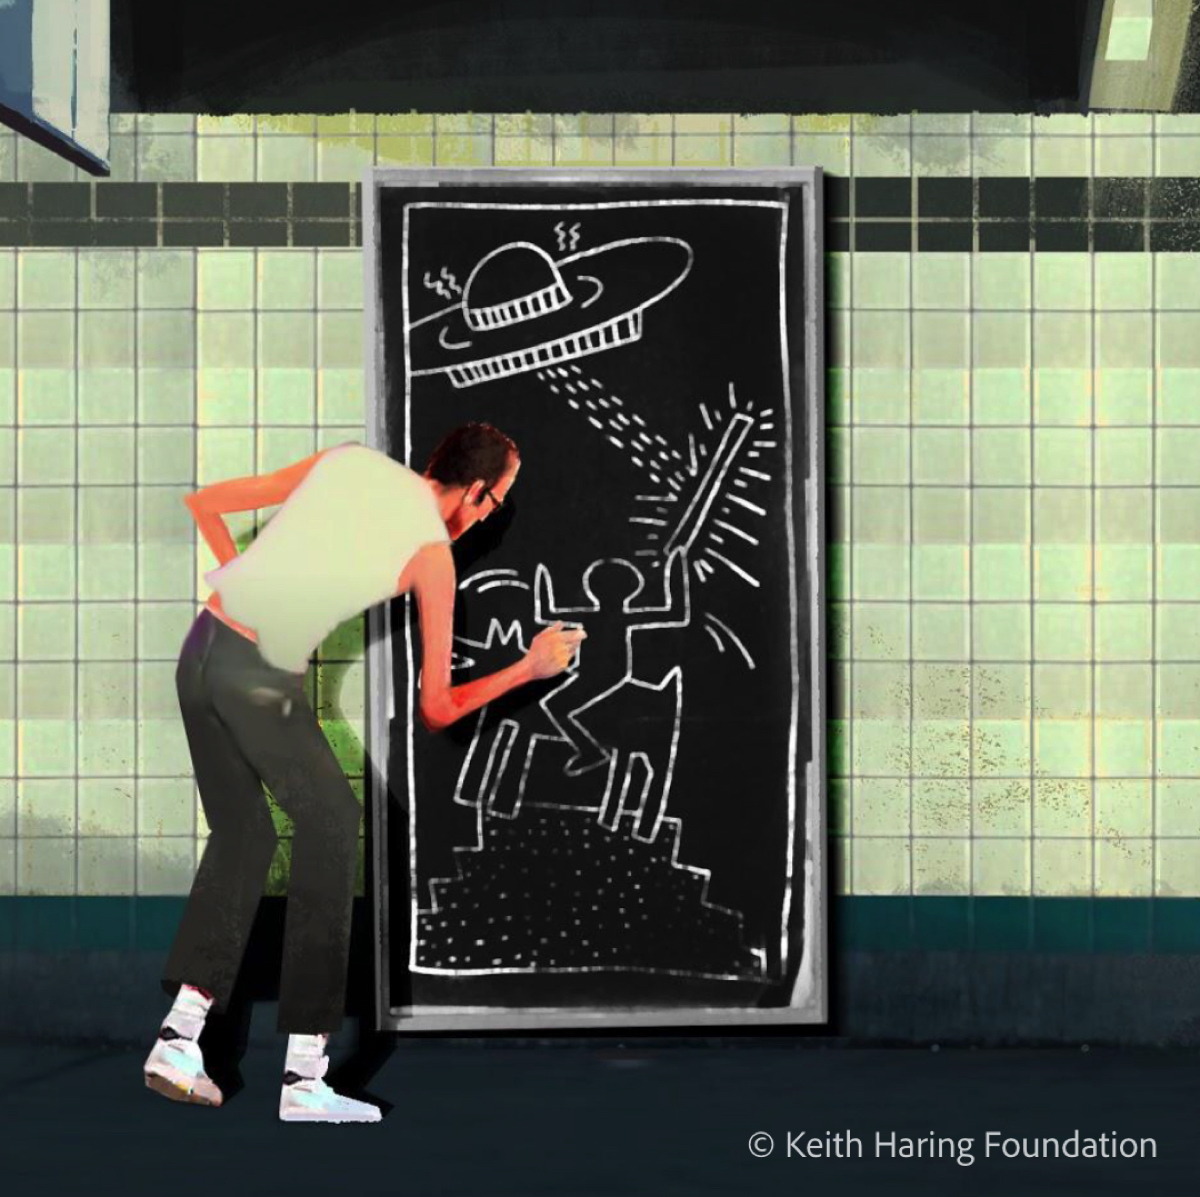 Adobe ricrea in digitale pennelli e strumenti di Keith Haring